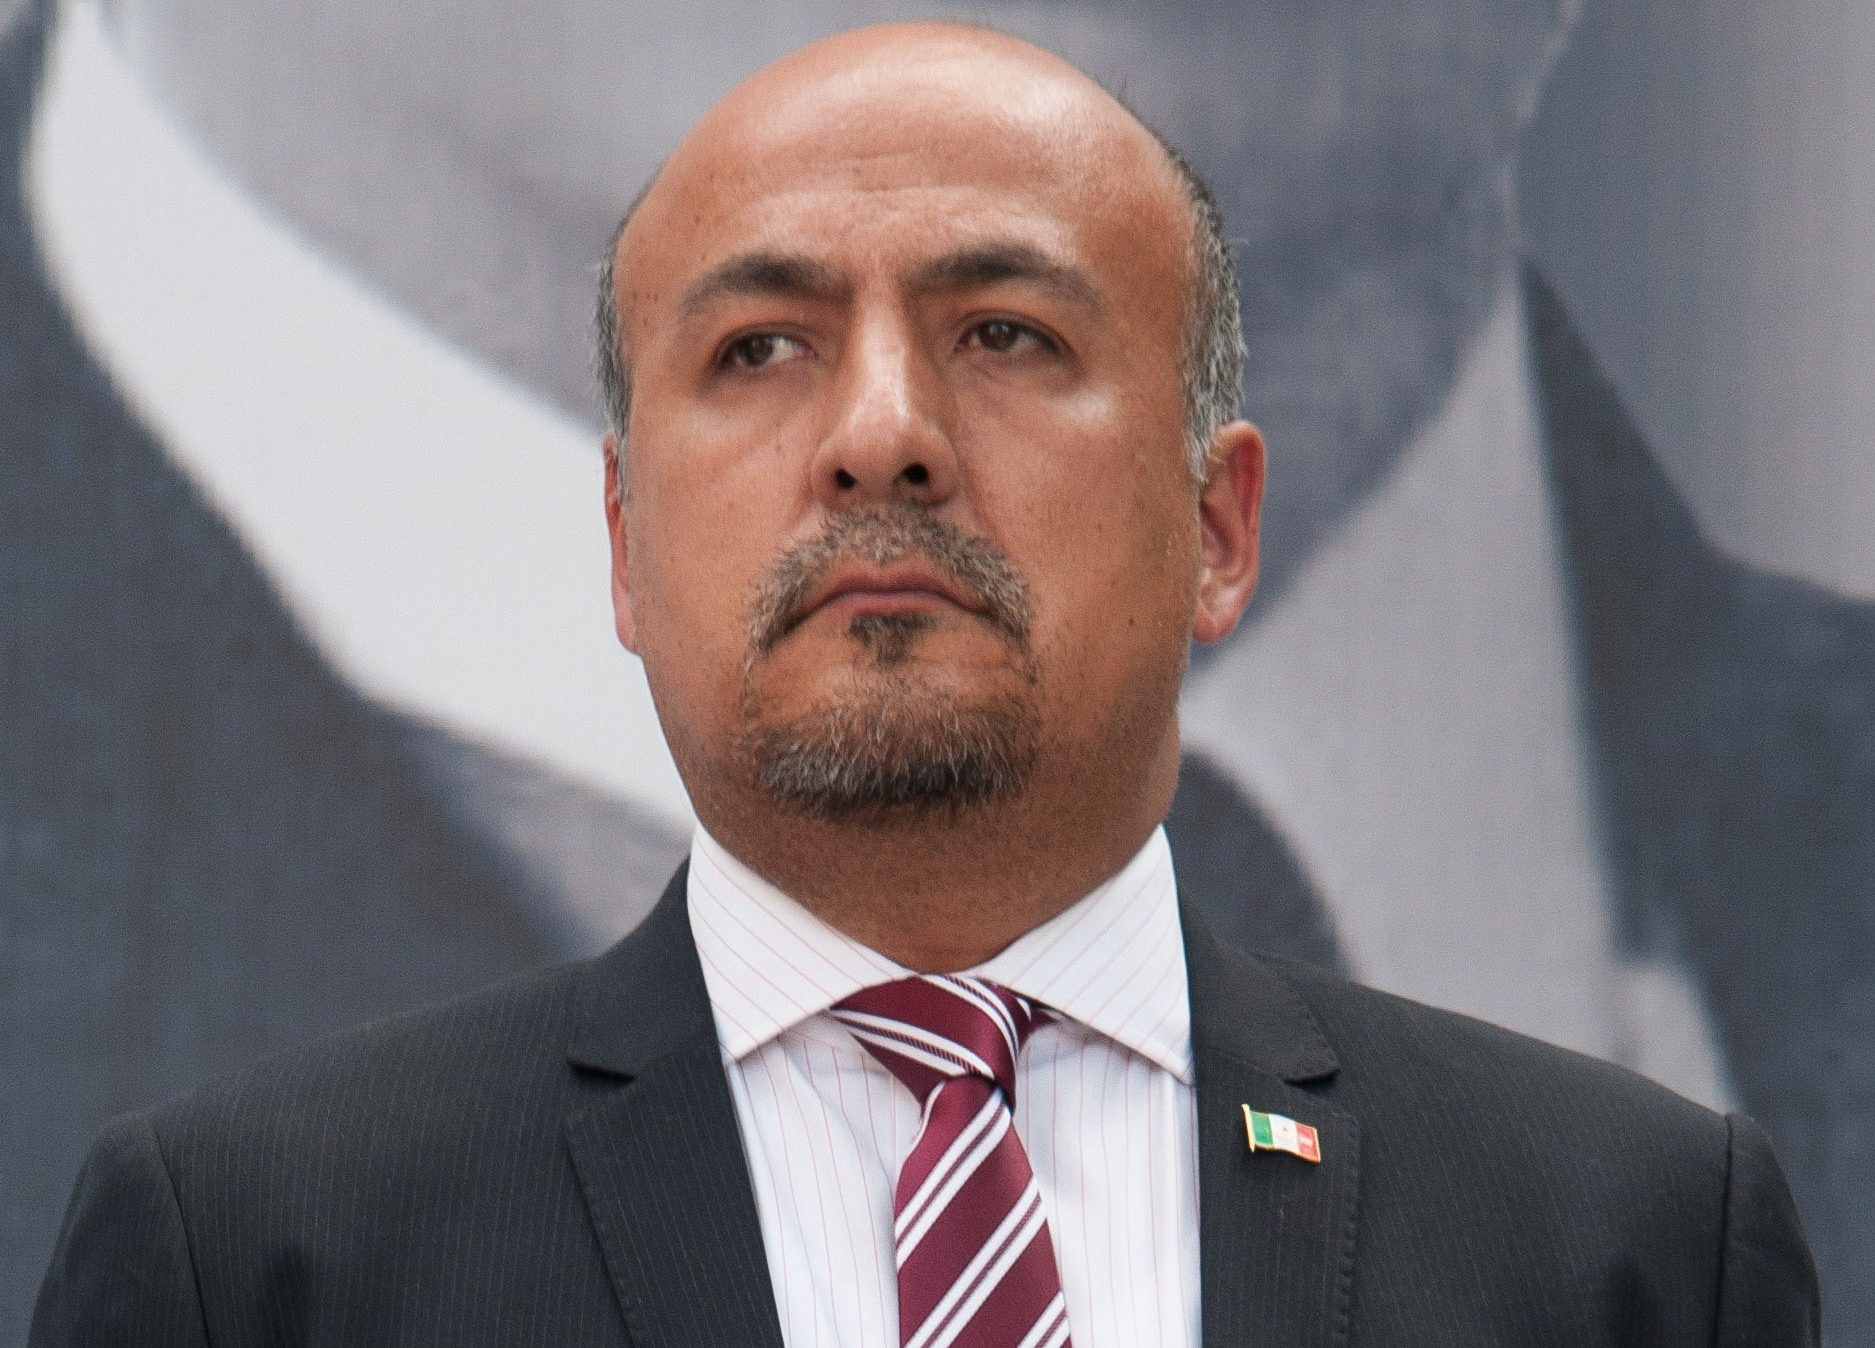 Maximiliano Reyes, subsecretario de América Latina y el Caribe anunció que el gobierno de México no suscribía el acuerdo del Grupo de Lima en contra de Nicolás Maduro